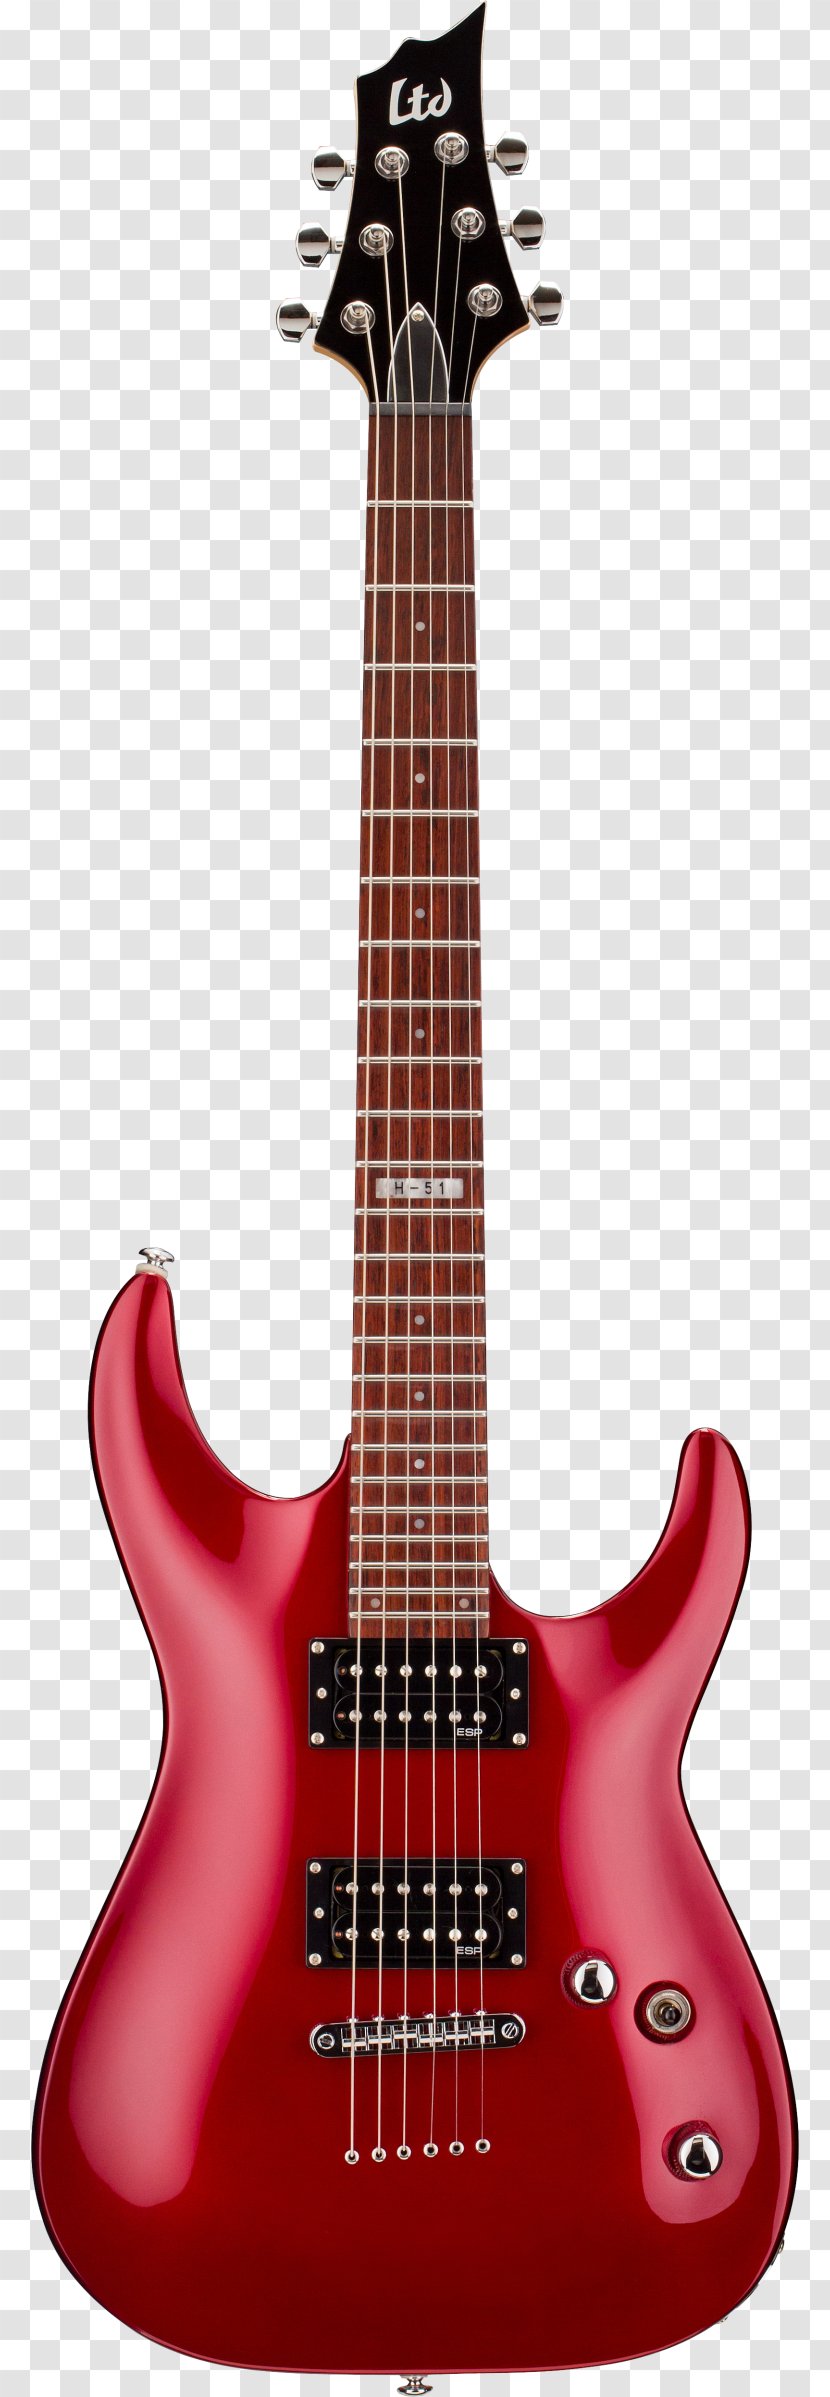 ESP LTD EC-1000 Guitars Electric Guitar Bolt-on Neck Transparent PNG